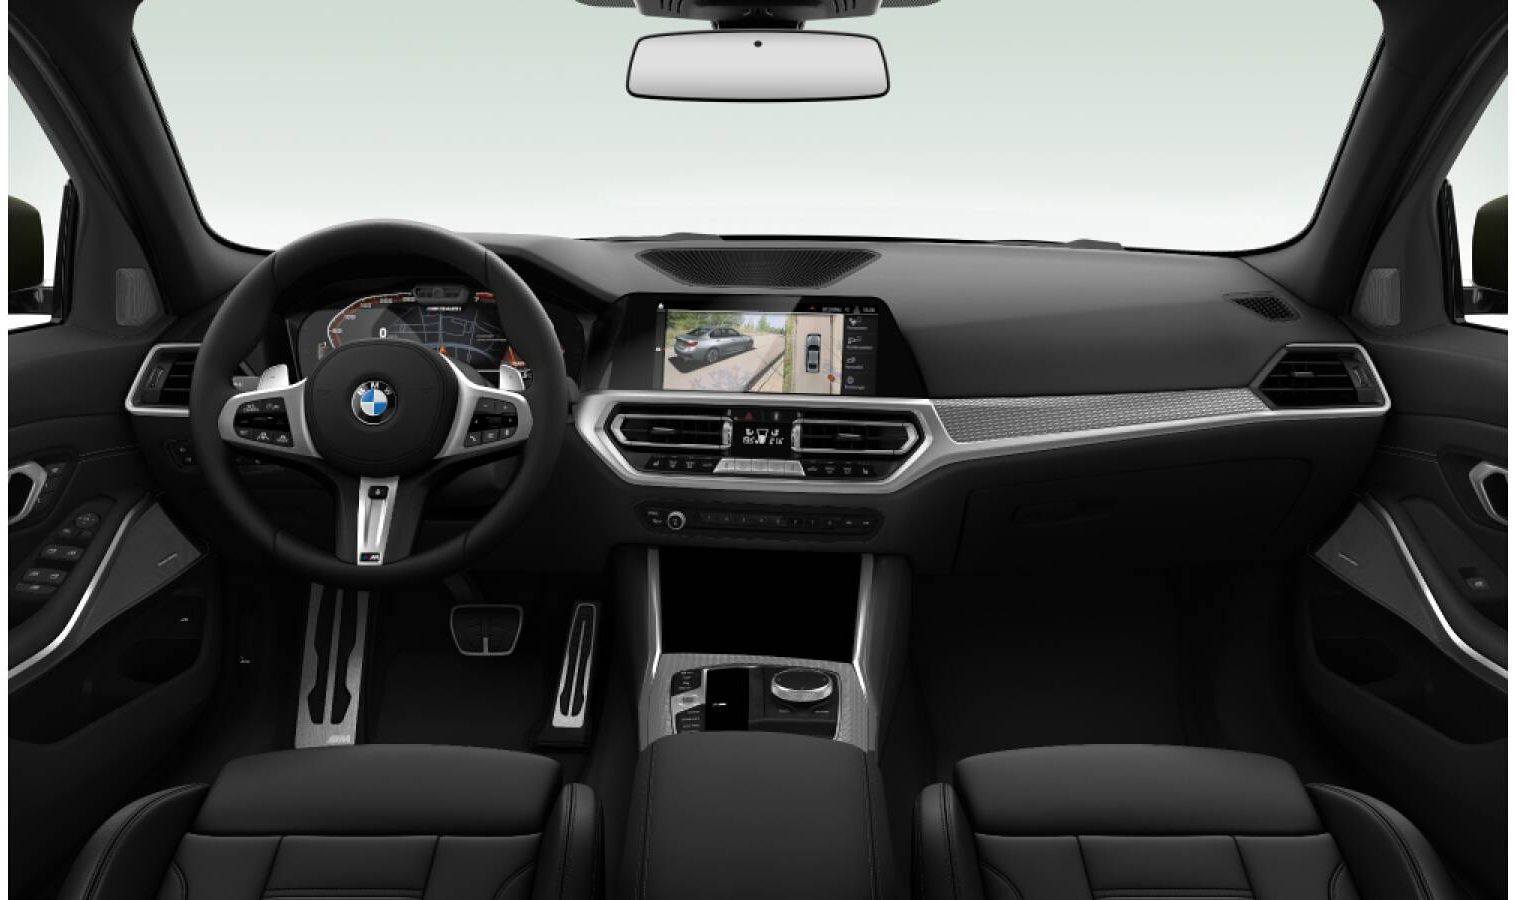 2019 BMW 3 Series G20 - Interior